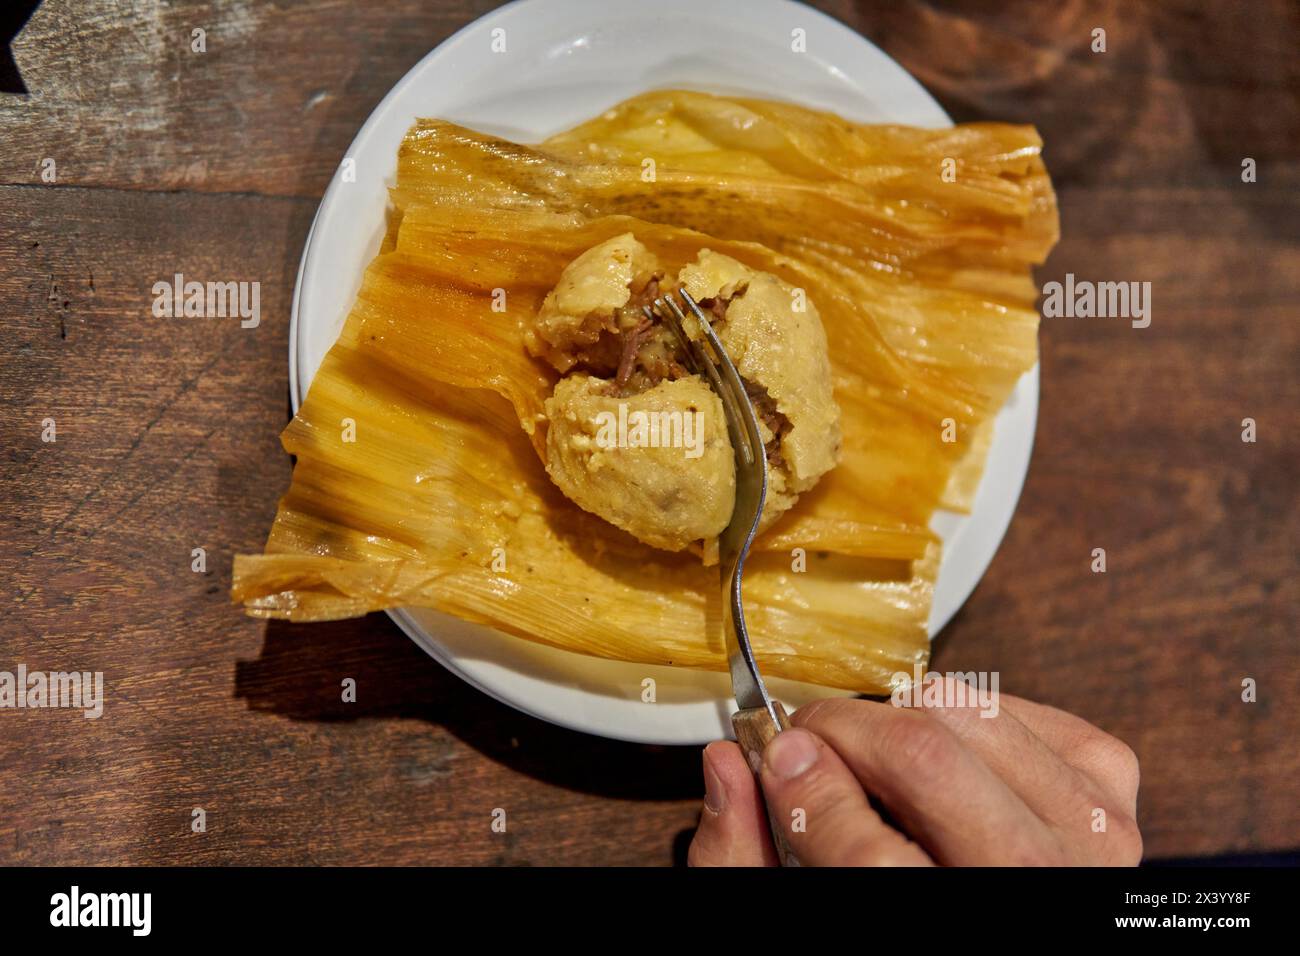 la main d'un homme fendre un tamale avec une fourchette. nourriture argentine typique, pâte à farine de maïs fourrée avec du bœuf, du porc ou du jerky, ainsi que d'autres ingrédients savoureux. Banque D'Images